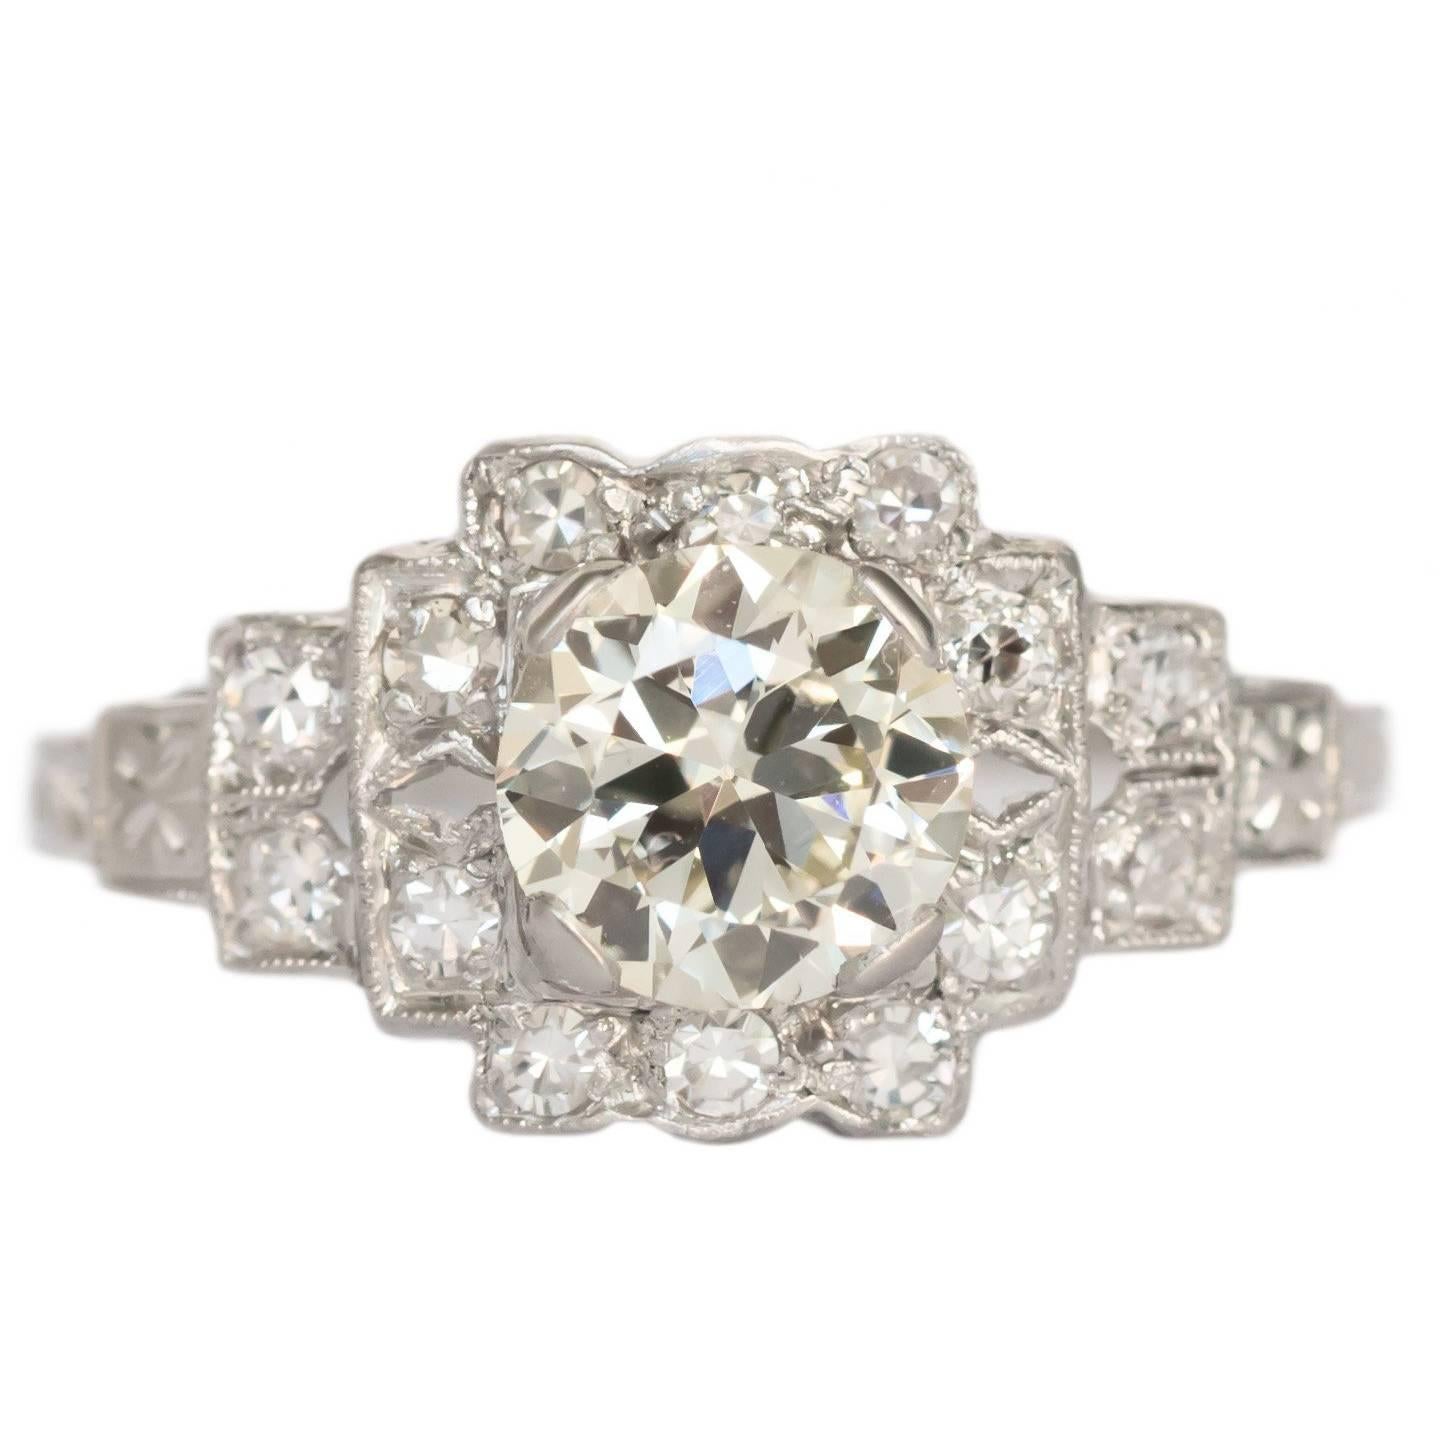 1.11 Carat Diamond Platinum Engagement Ring